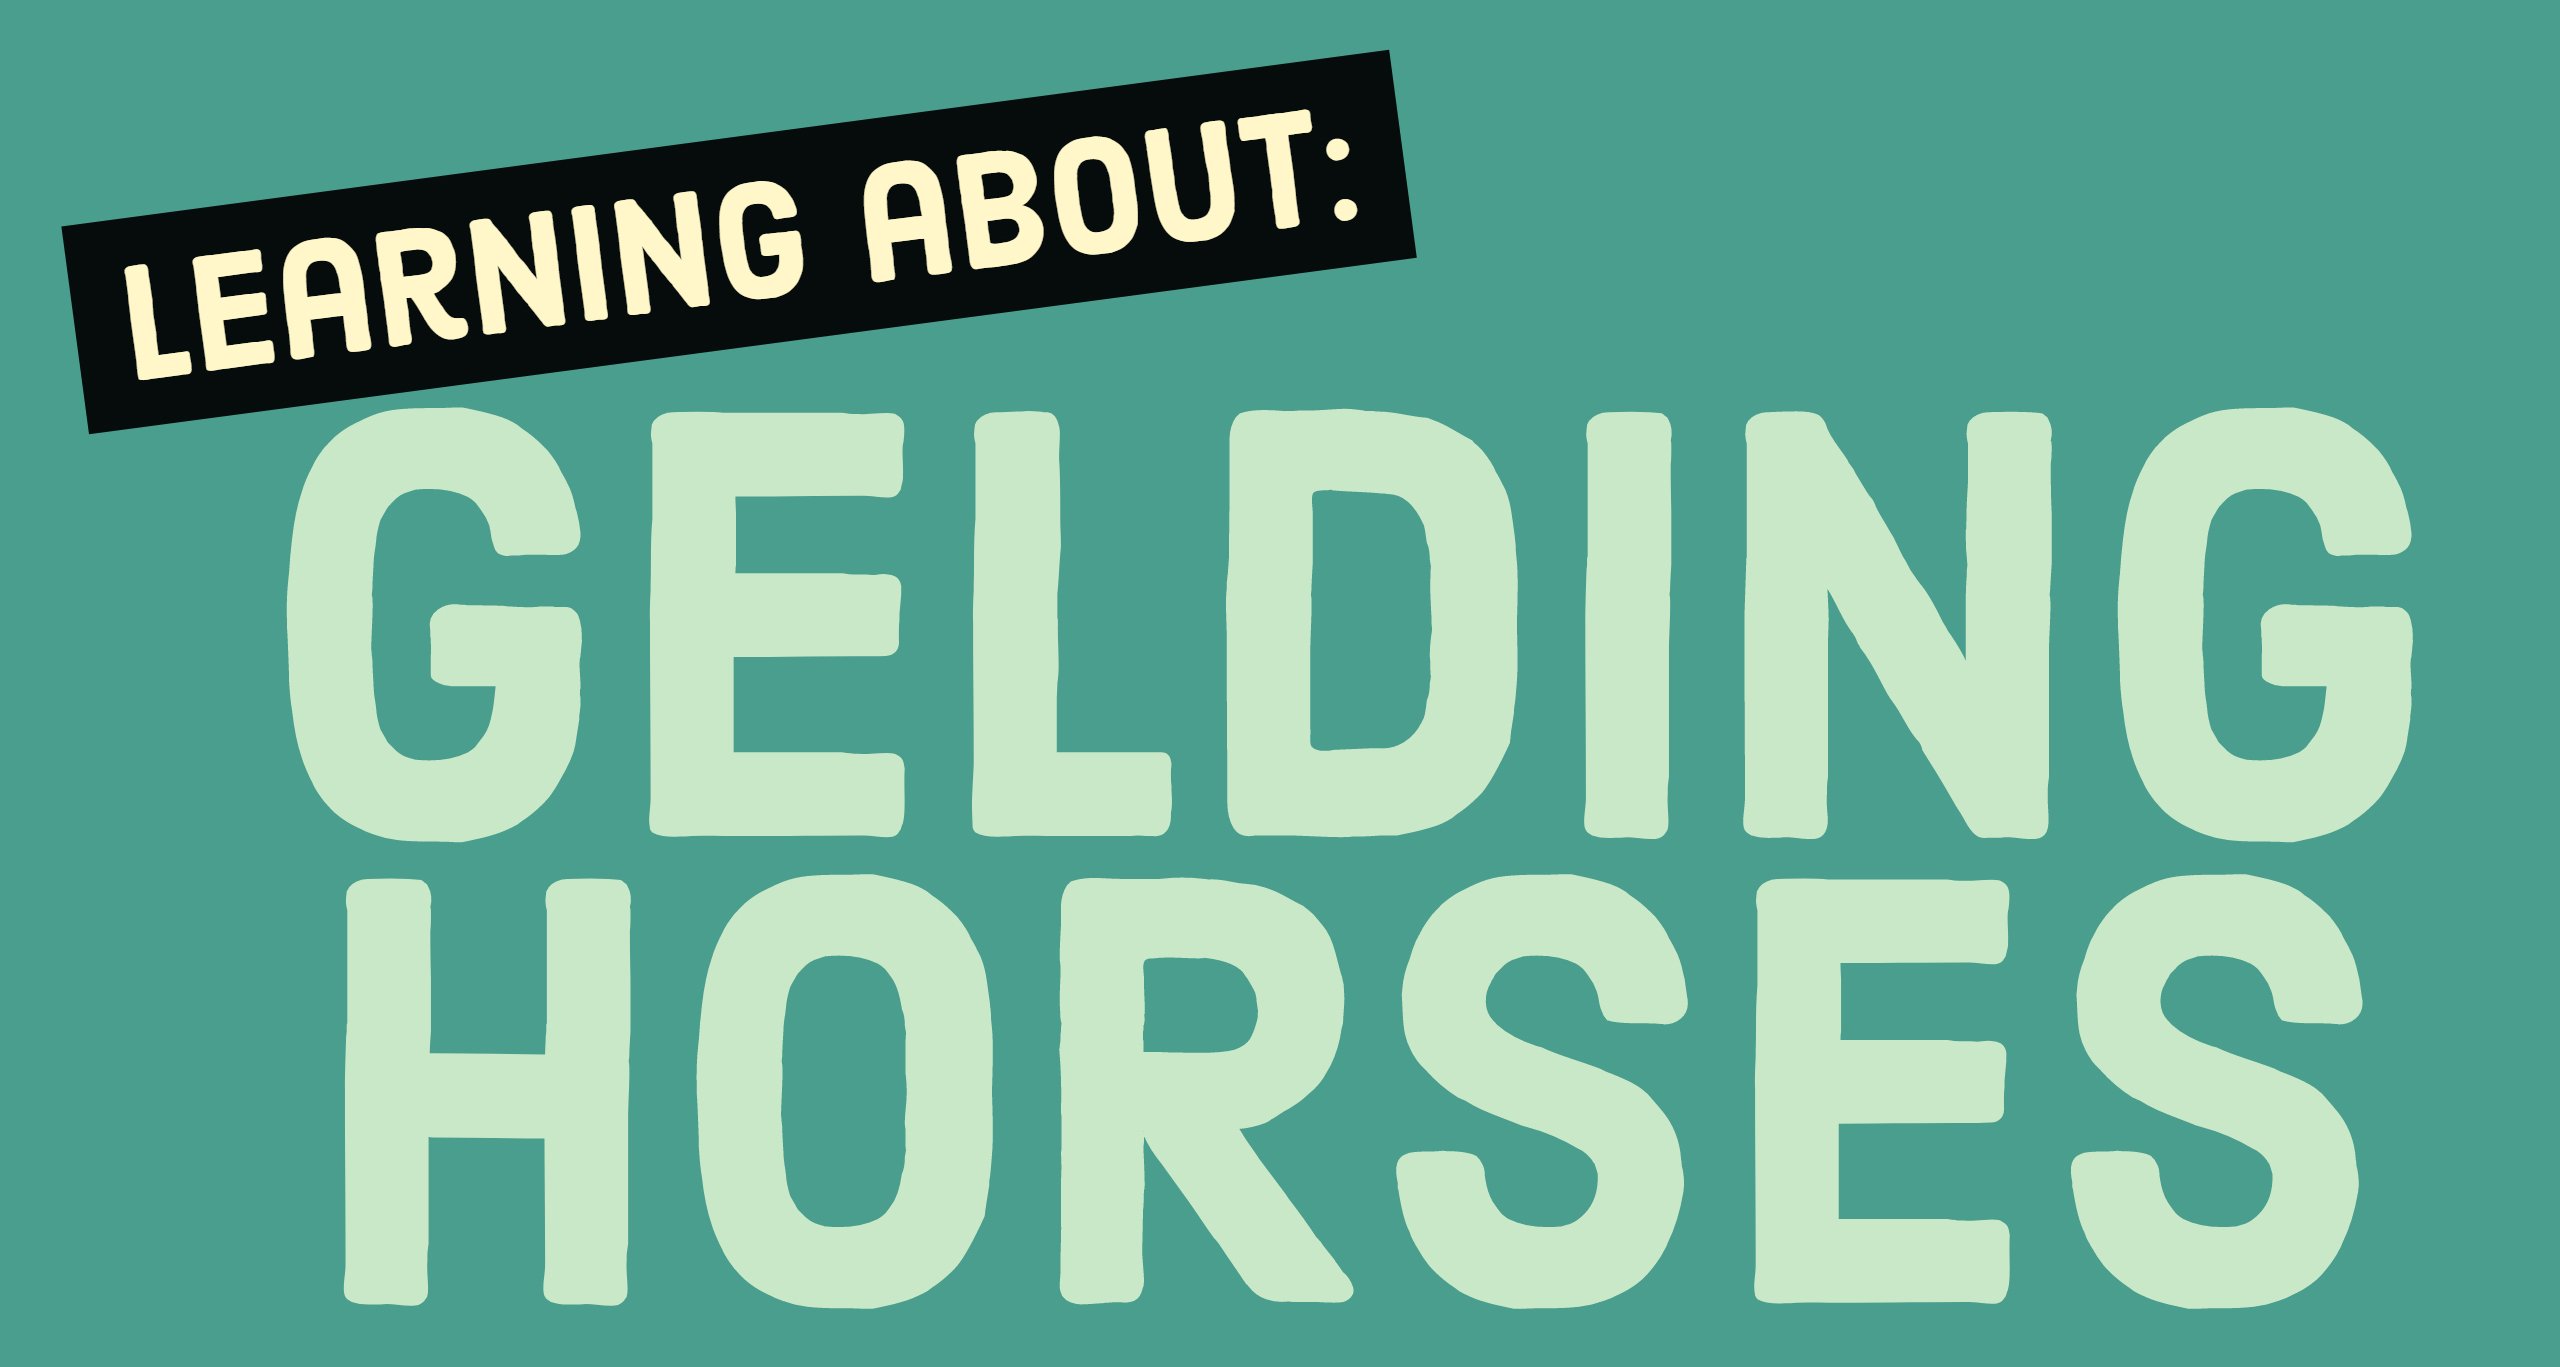 gedling horses